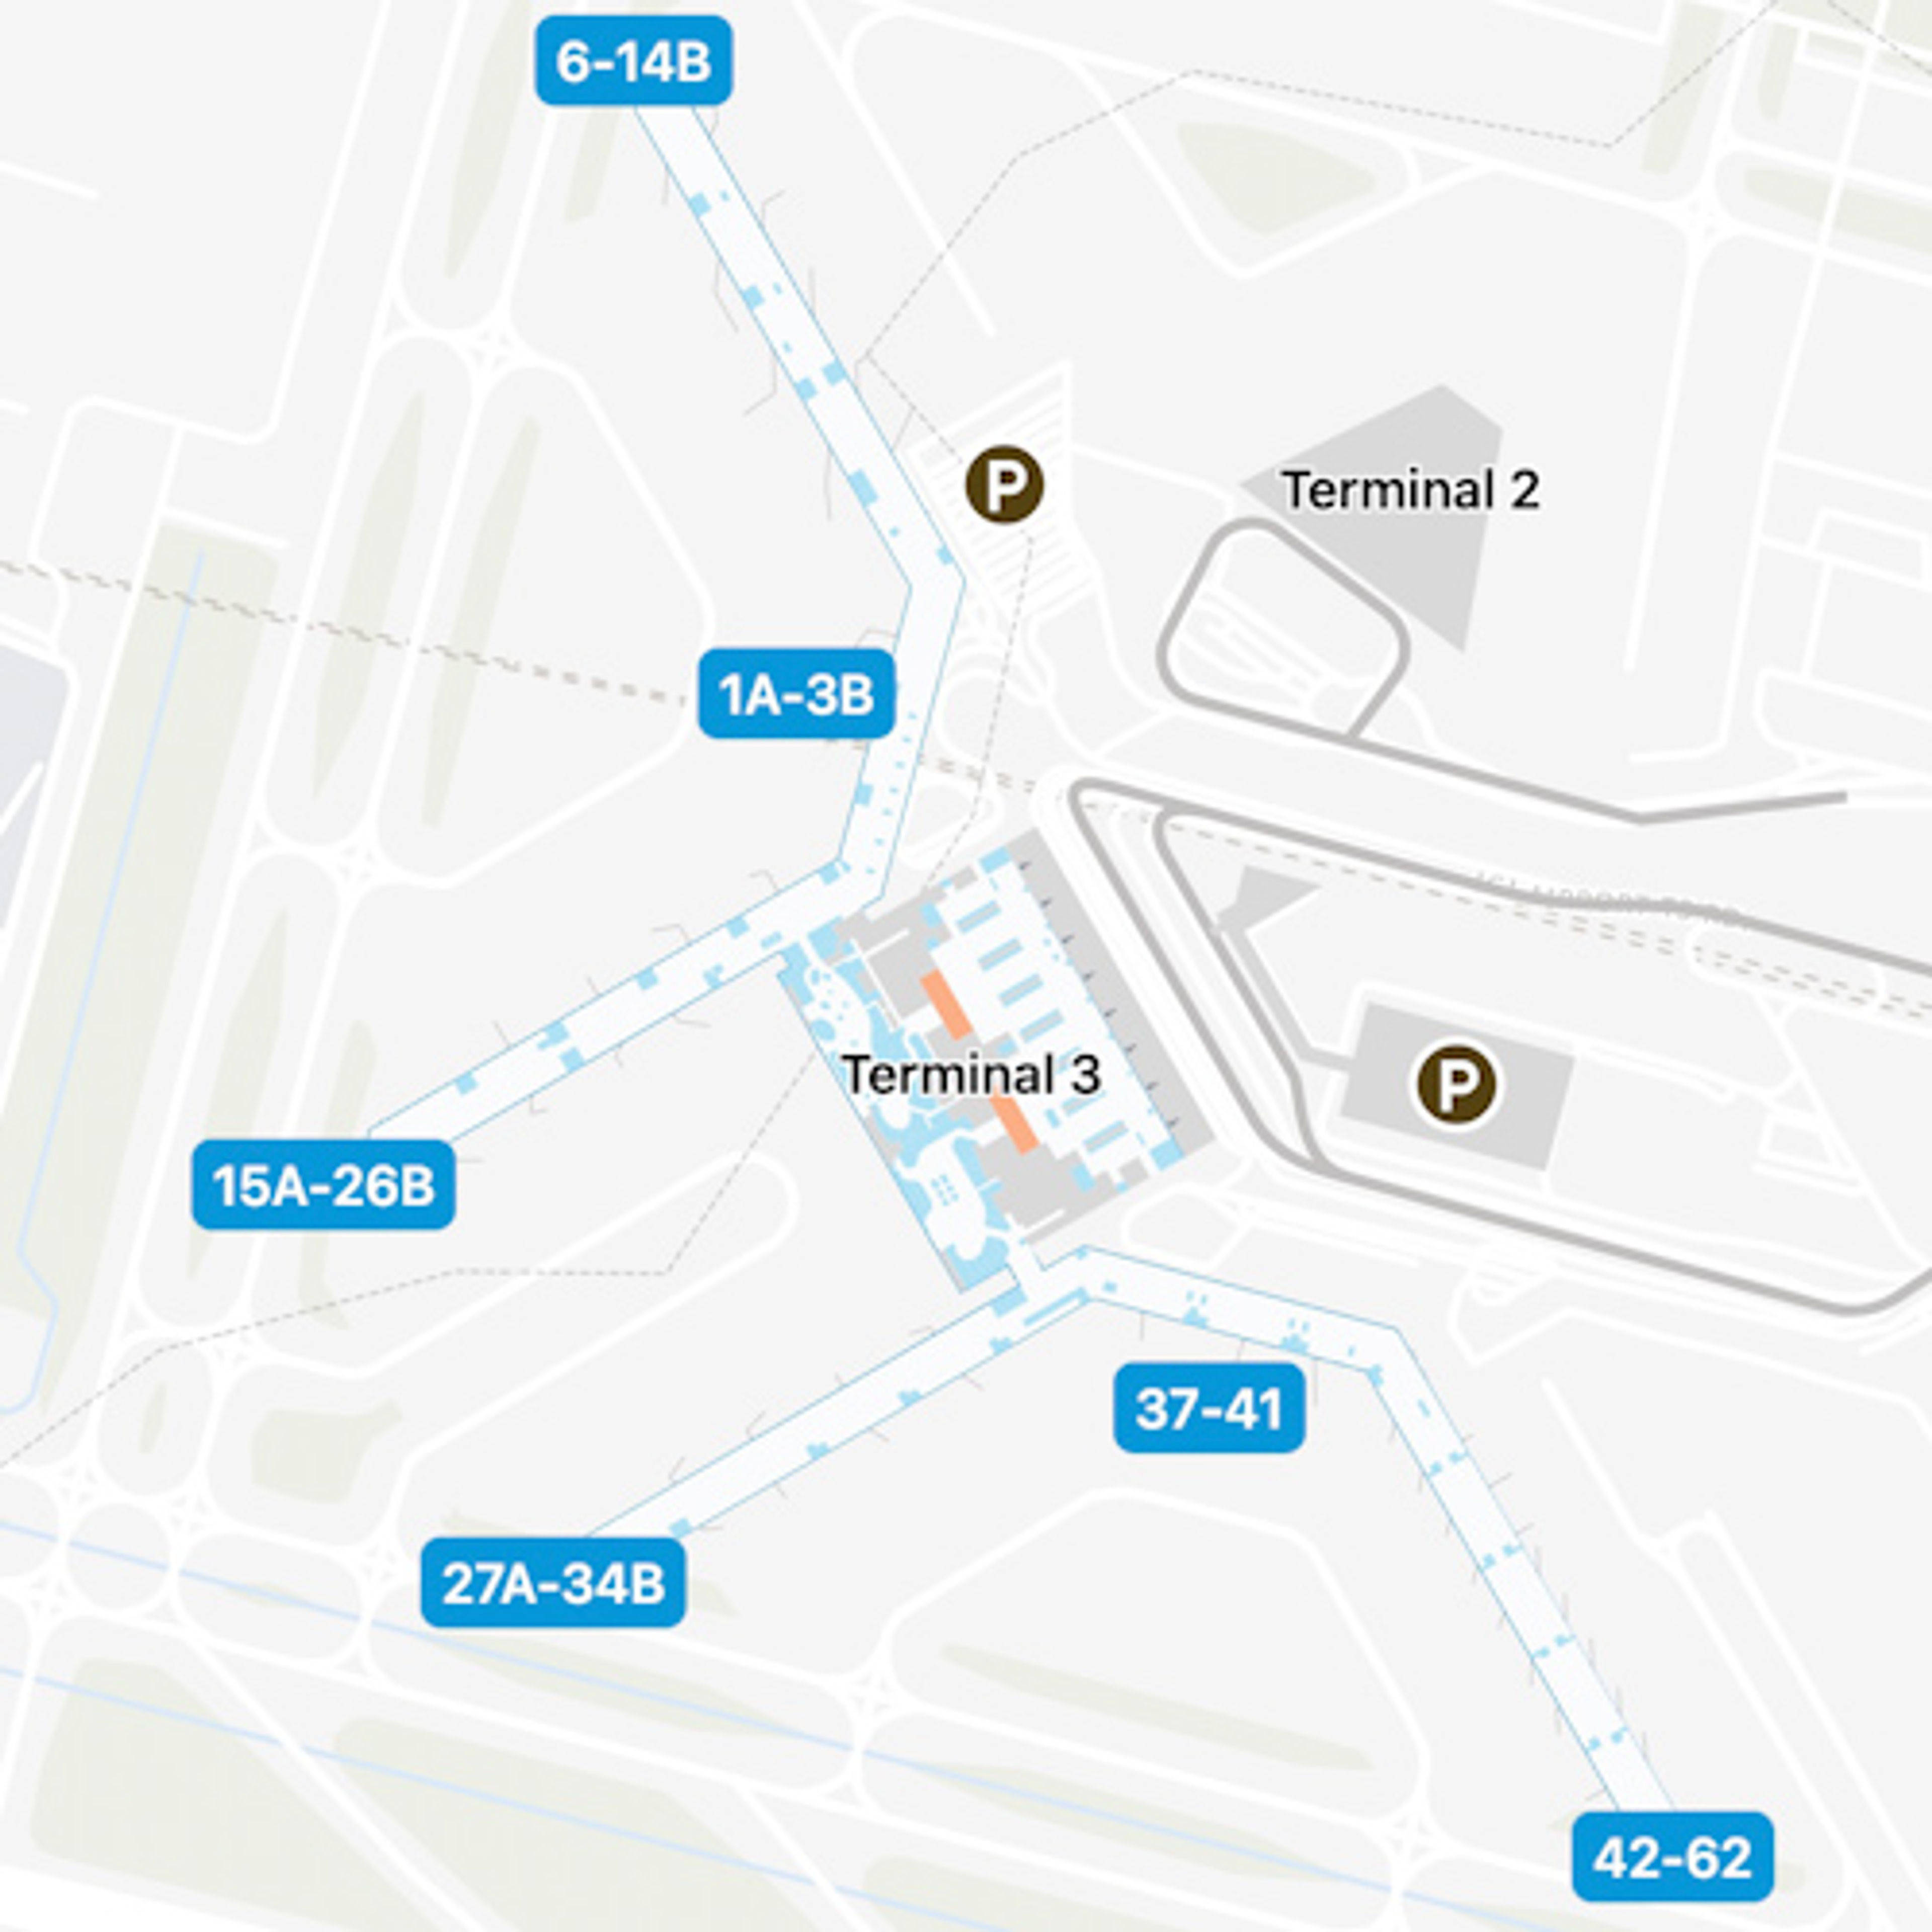 New Delhi Airport Domestic Terminal Map